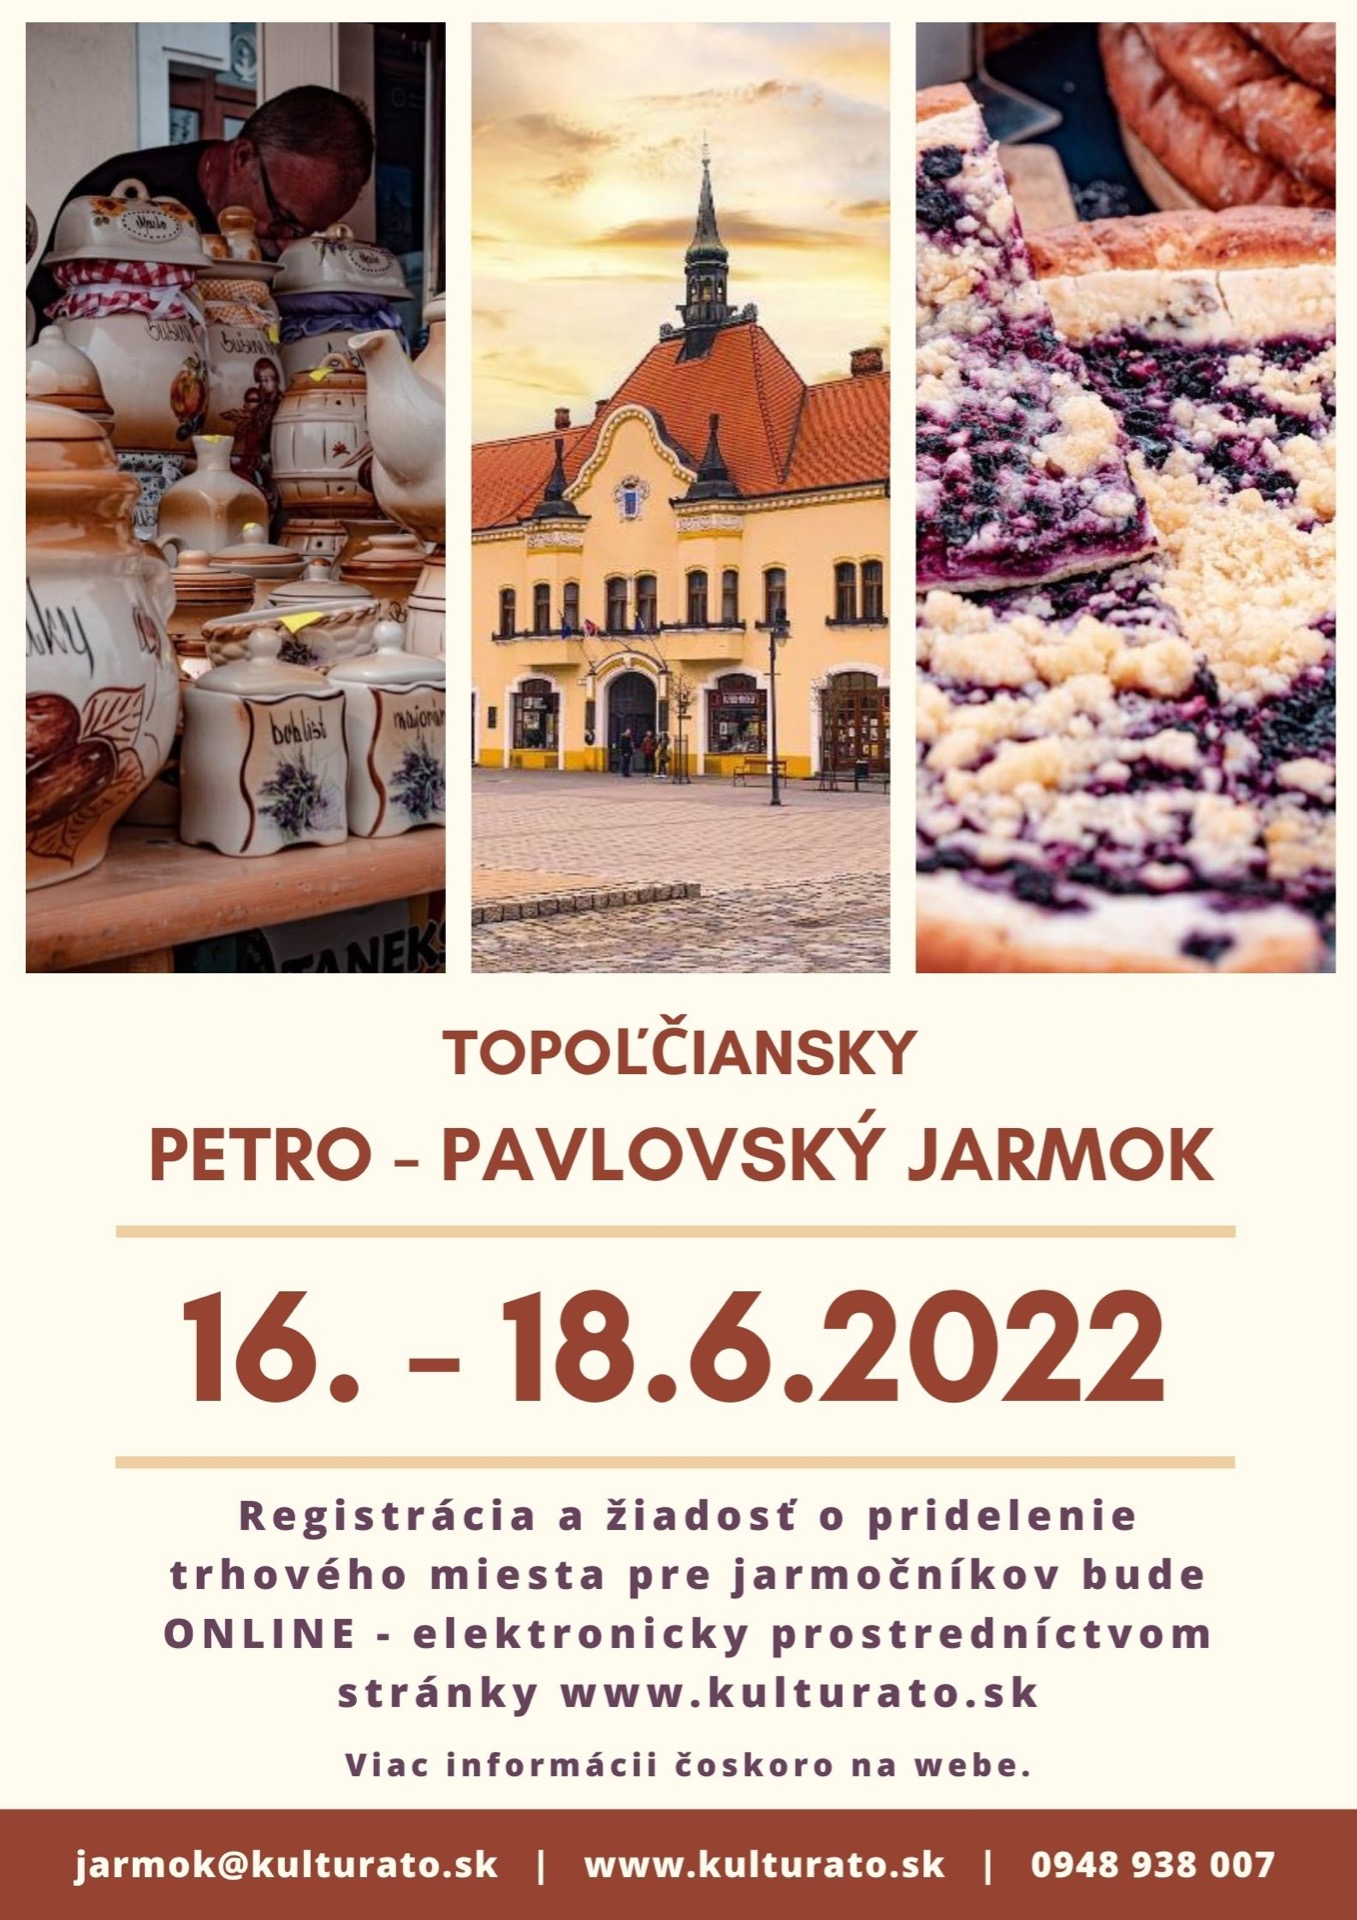 Topoiansky Petro - Pavlovsk jarmok 202